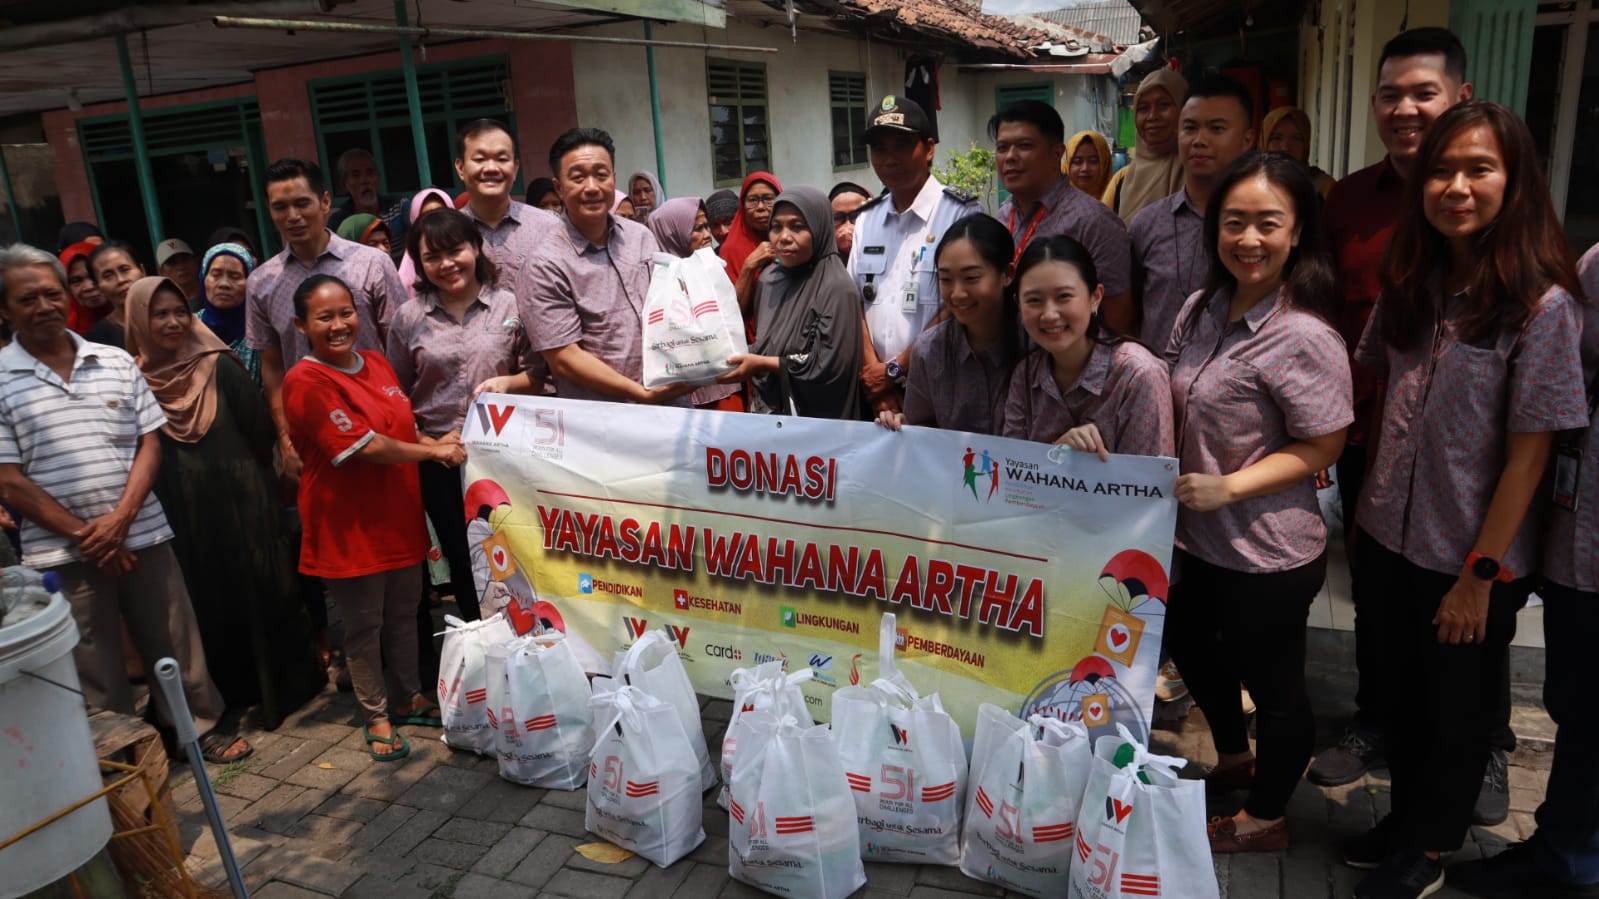 Yayasan Wahana Artha Bagikan 1000 Sembako di 5 Lokasi Jakarta